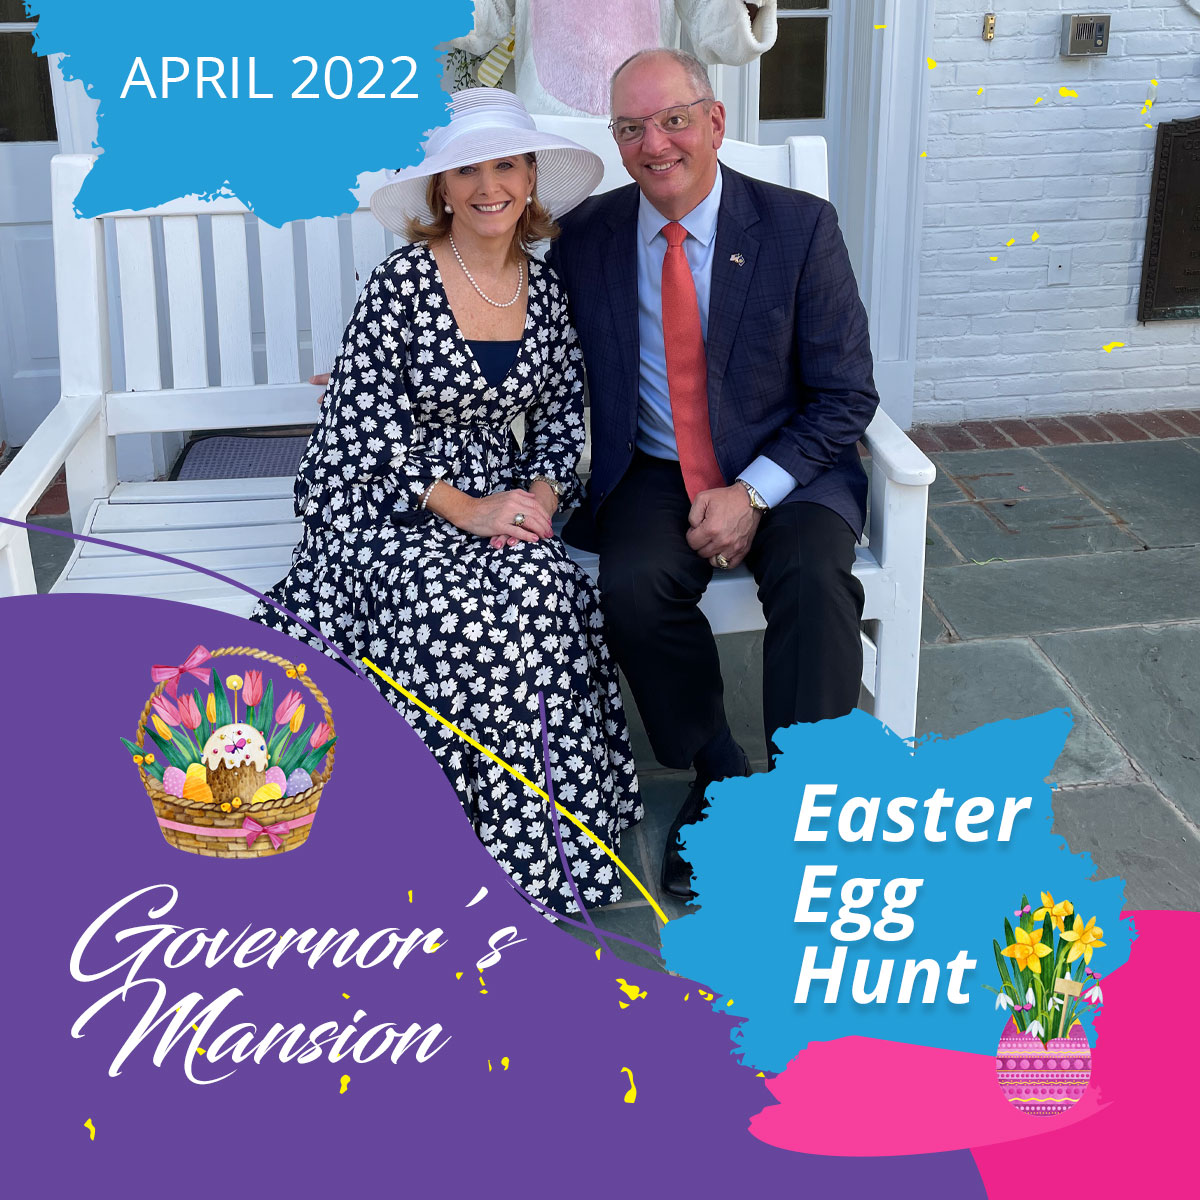 The Governor’s Mansion: Easter Egg Hunt